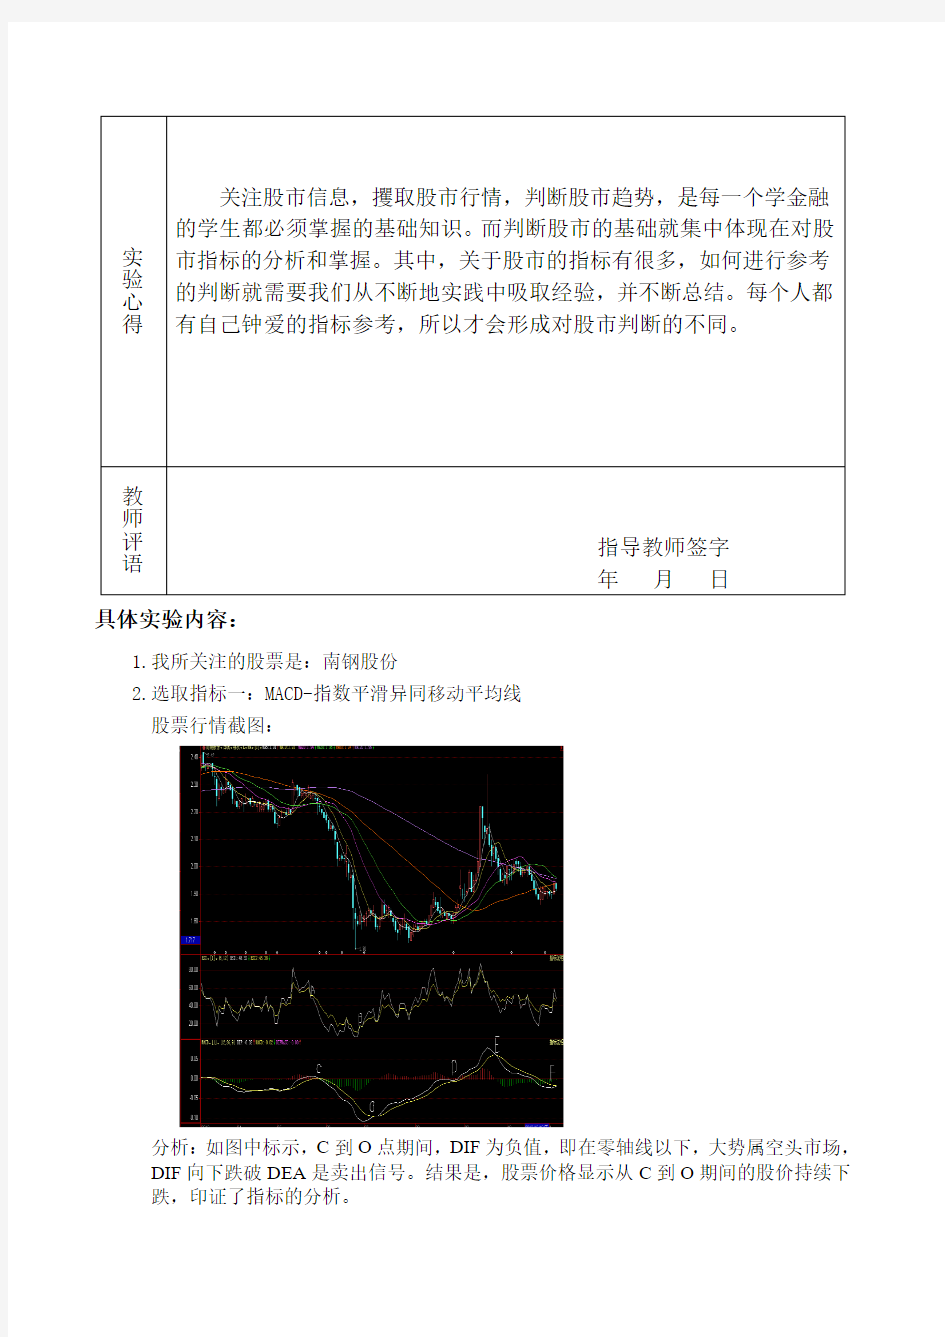 3证券投资学实验三：股票技术分析指标应用 (1)